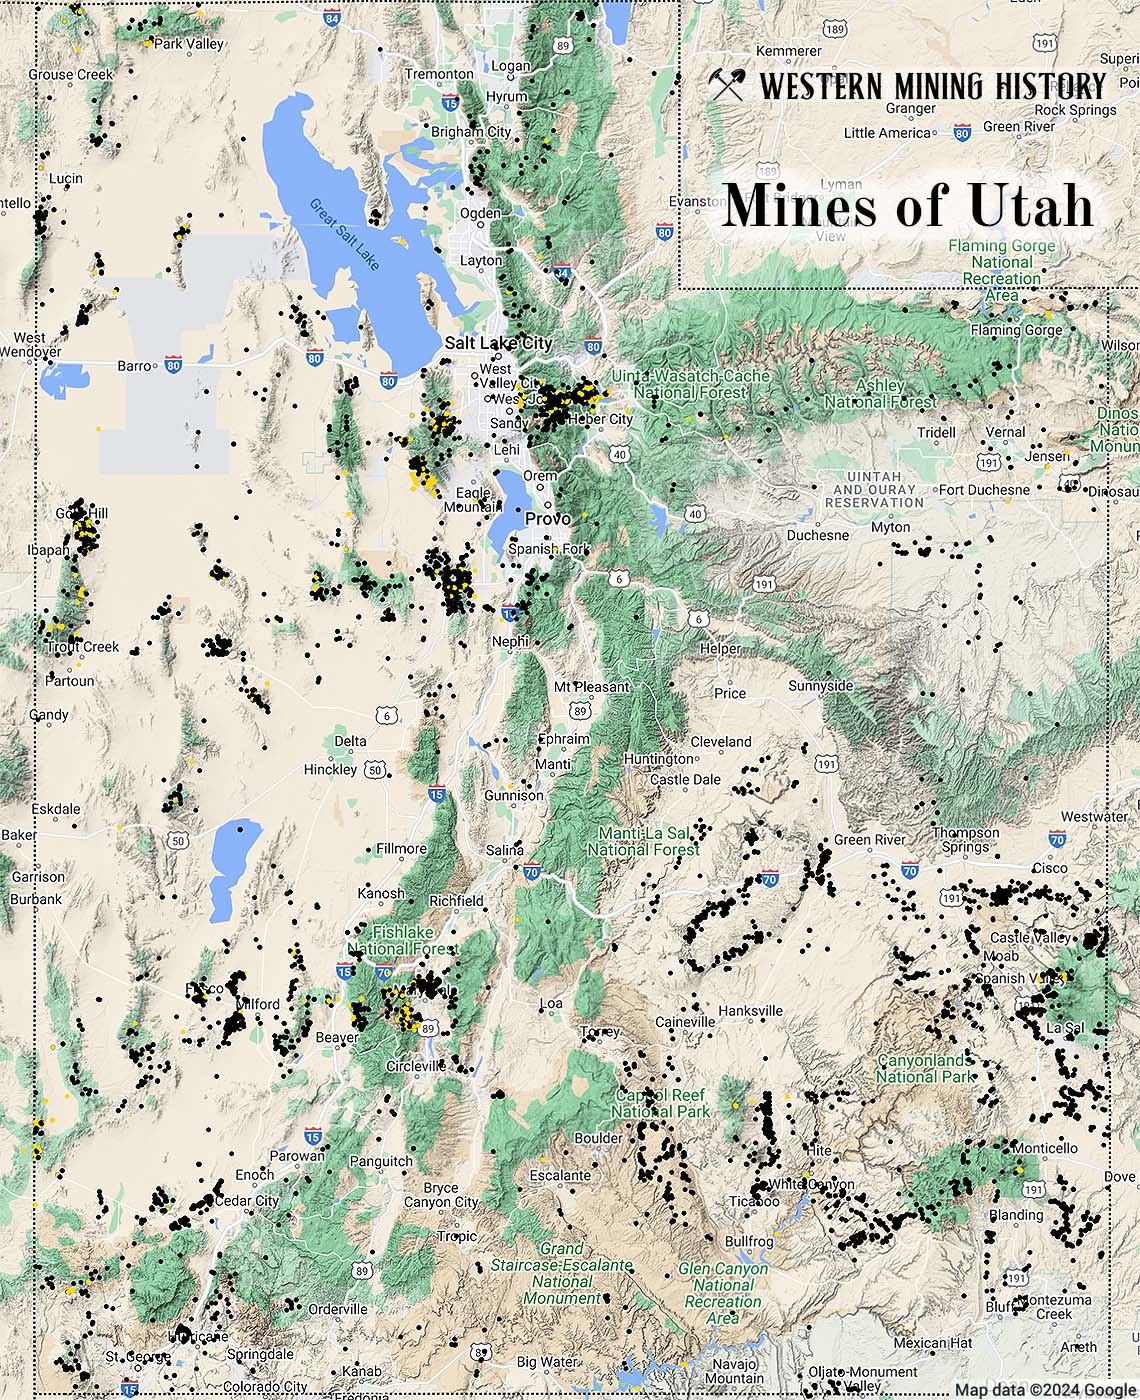 Utah mines